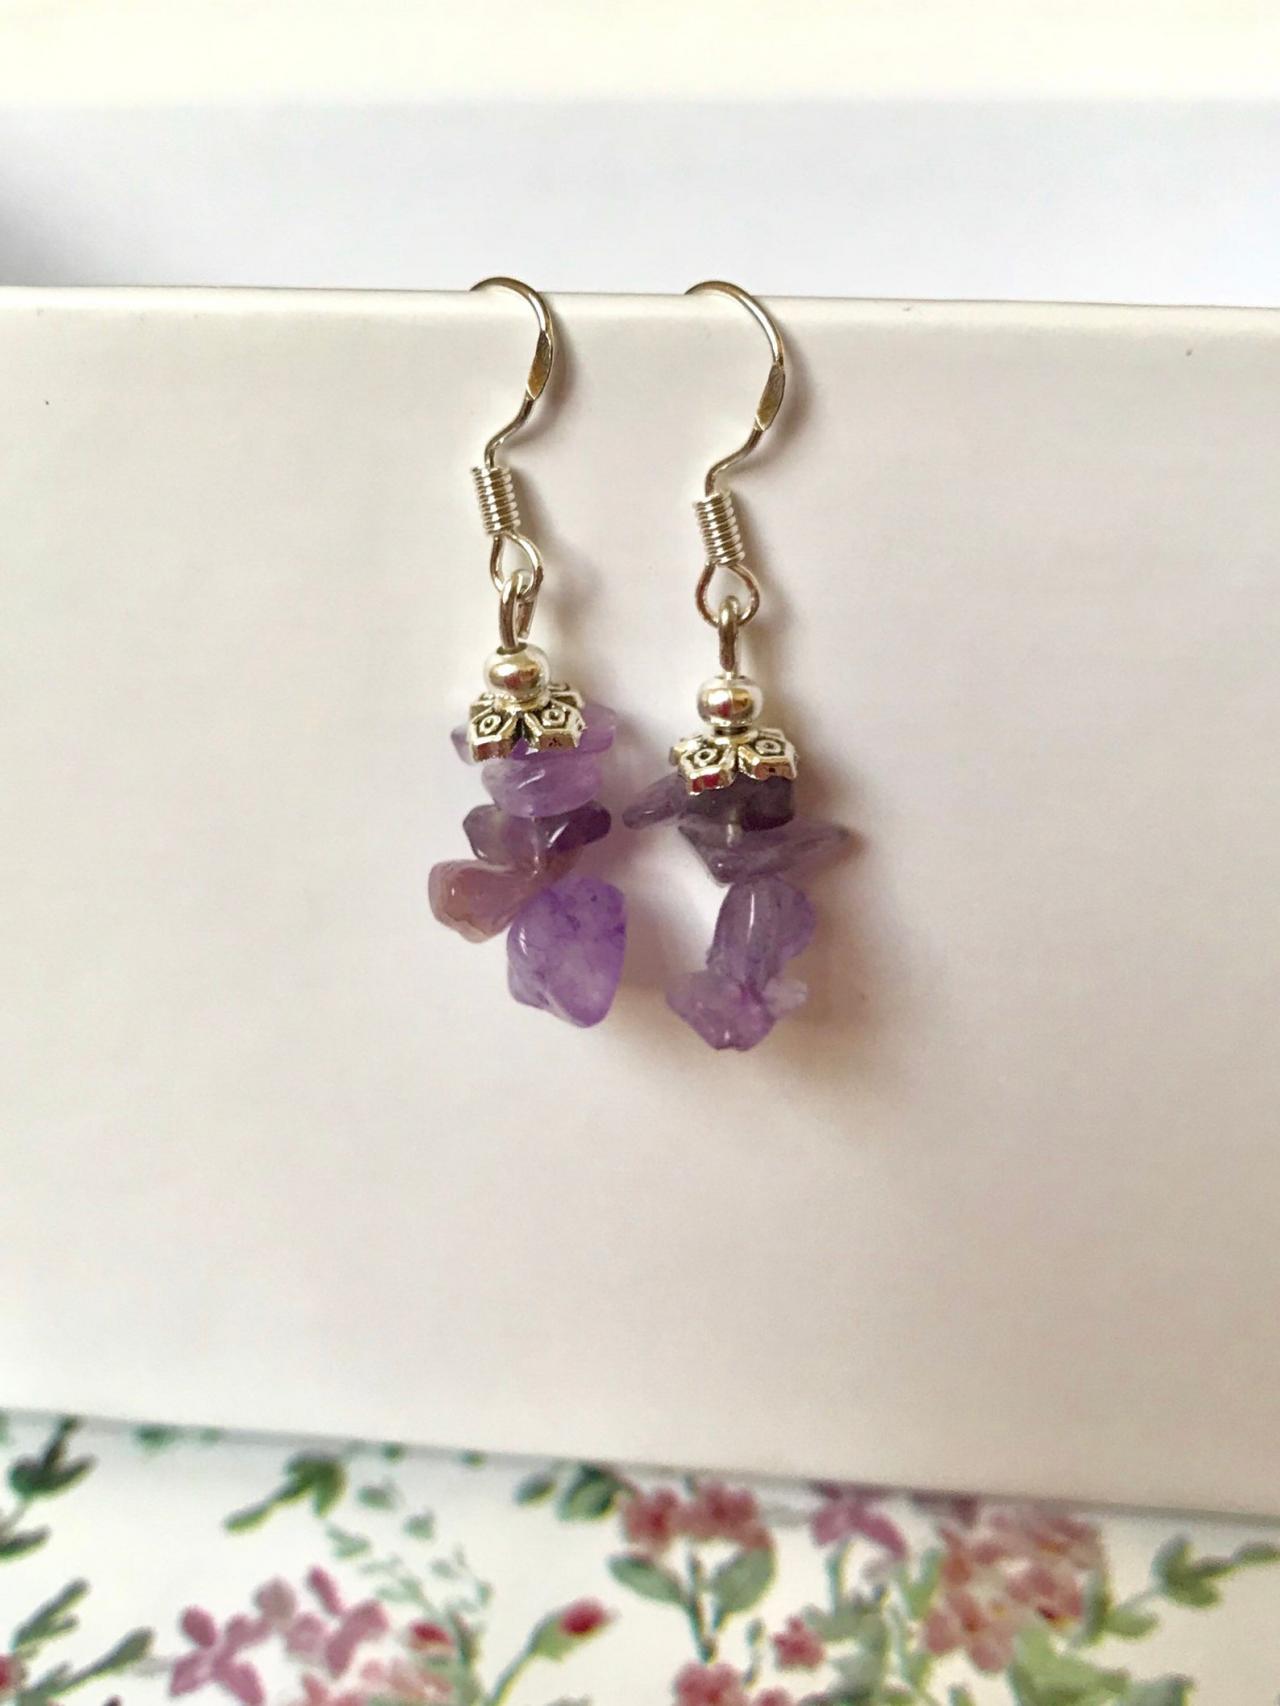 Purple amethyst drop earrings